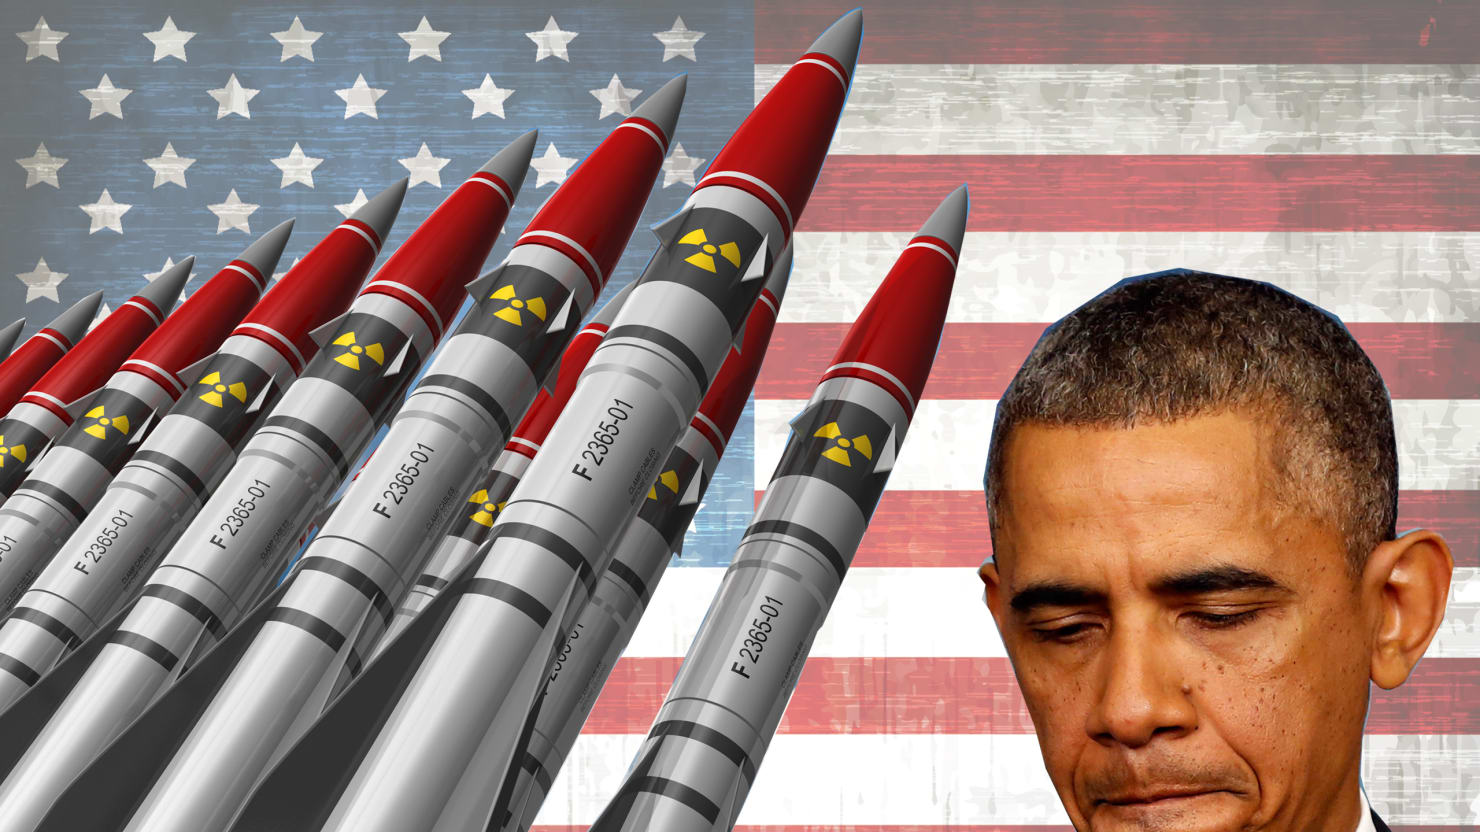 Top Secret Us Nuke War Plans Thwarted